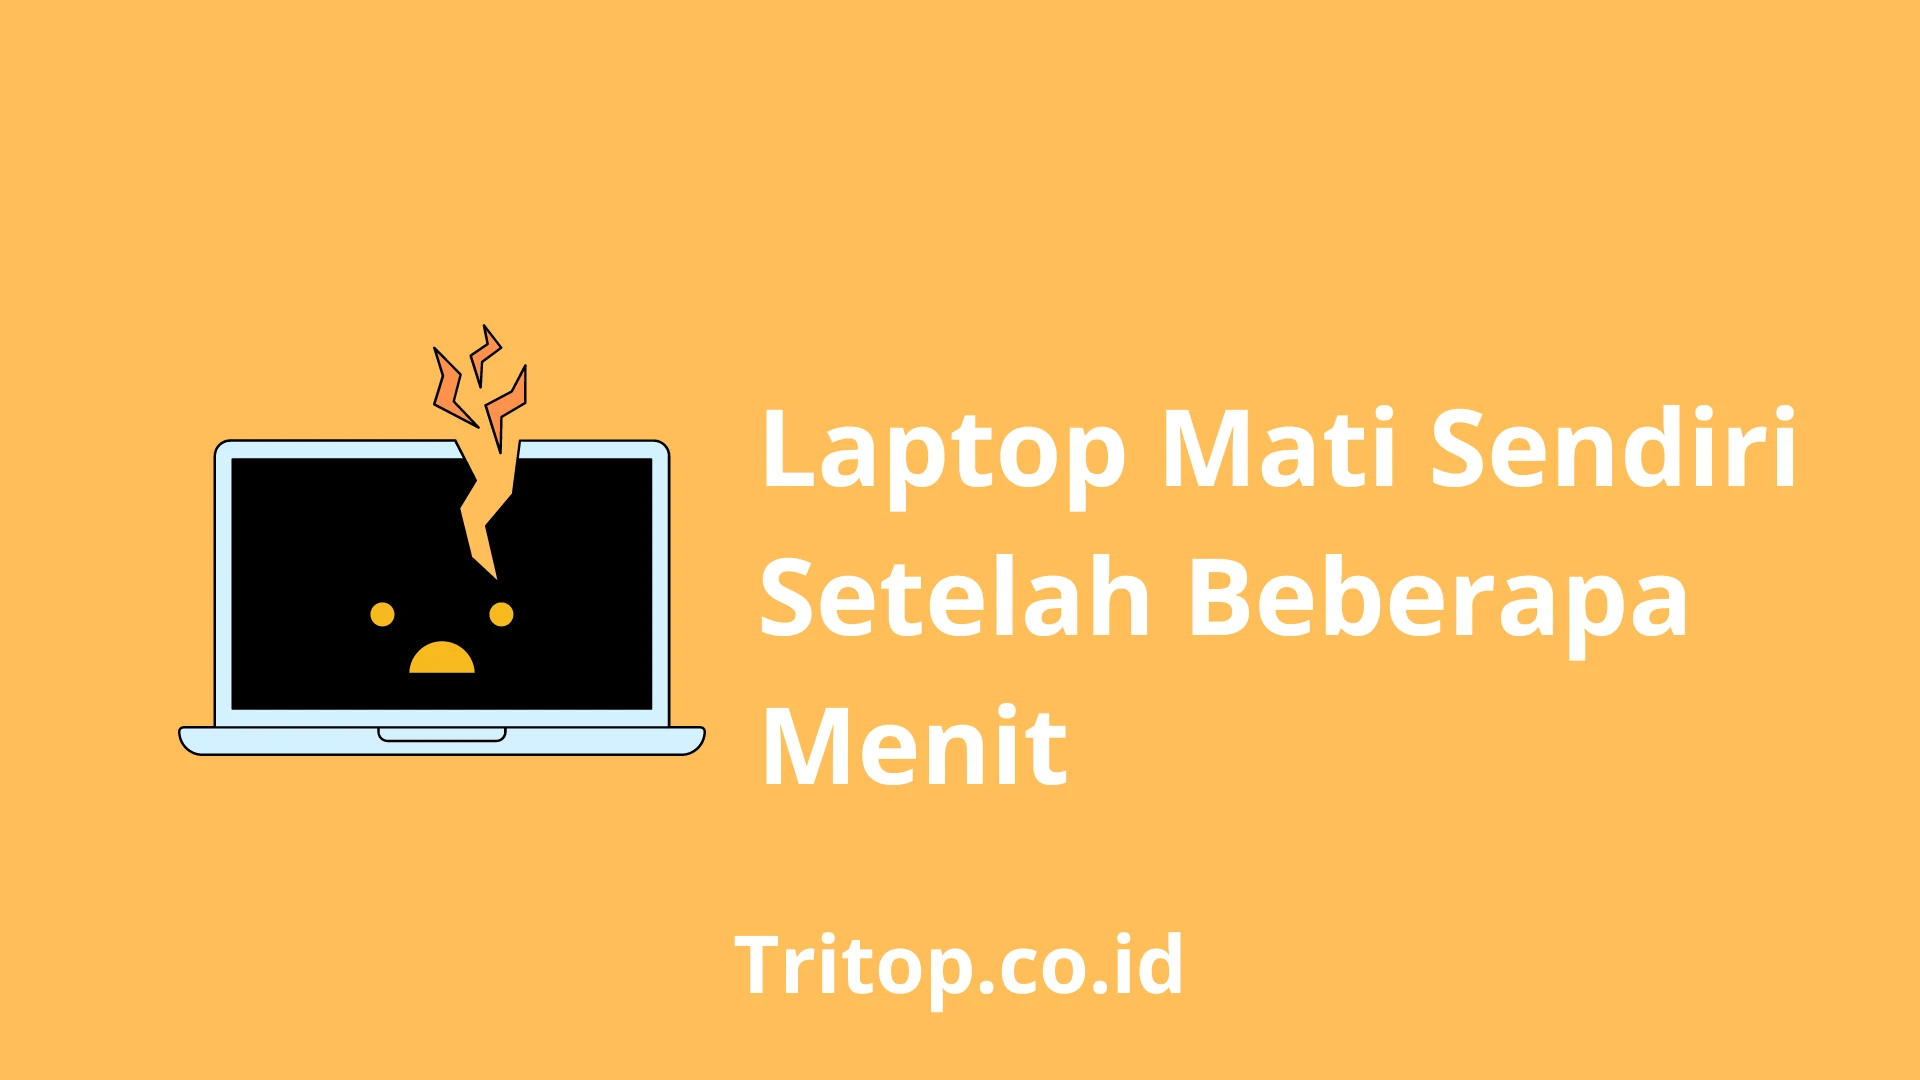 Laptop Mati Sendiri Setelah Beberapa Menit tritop.co.id